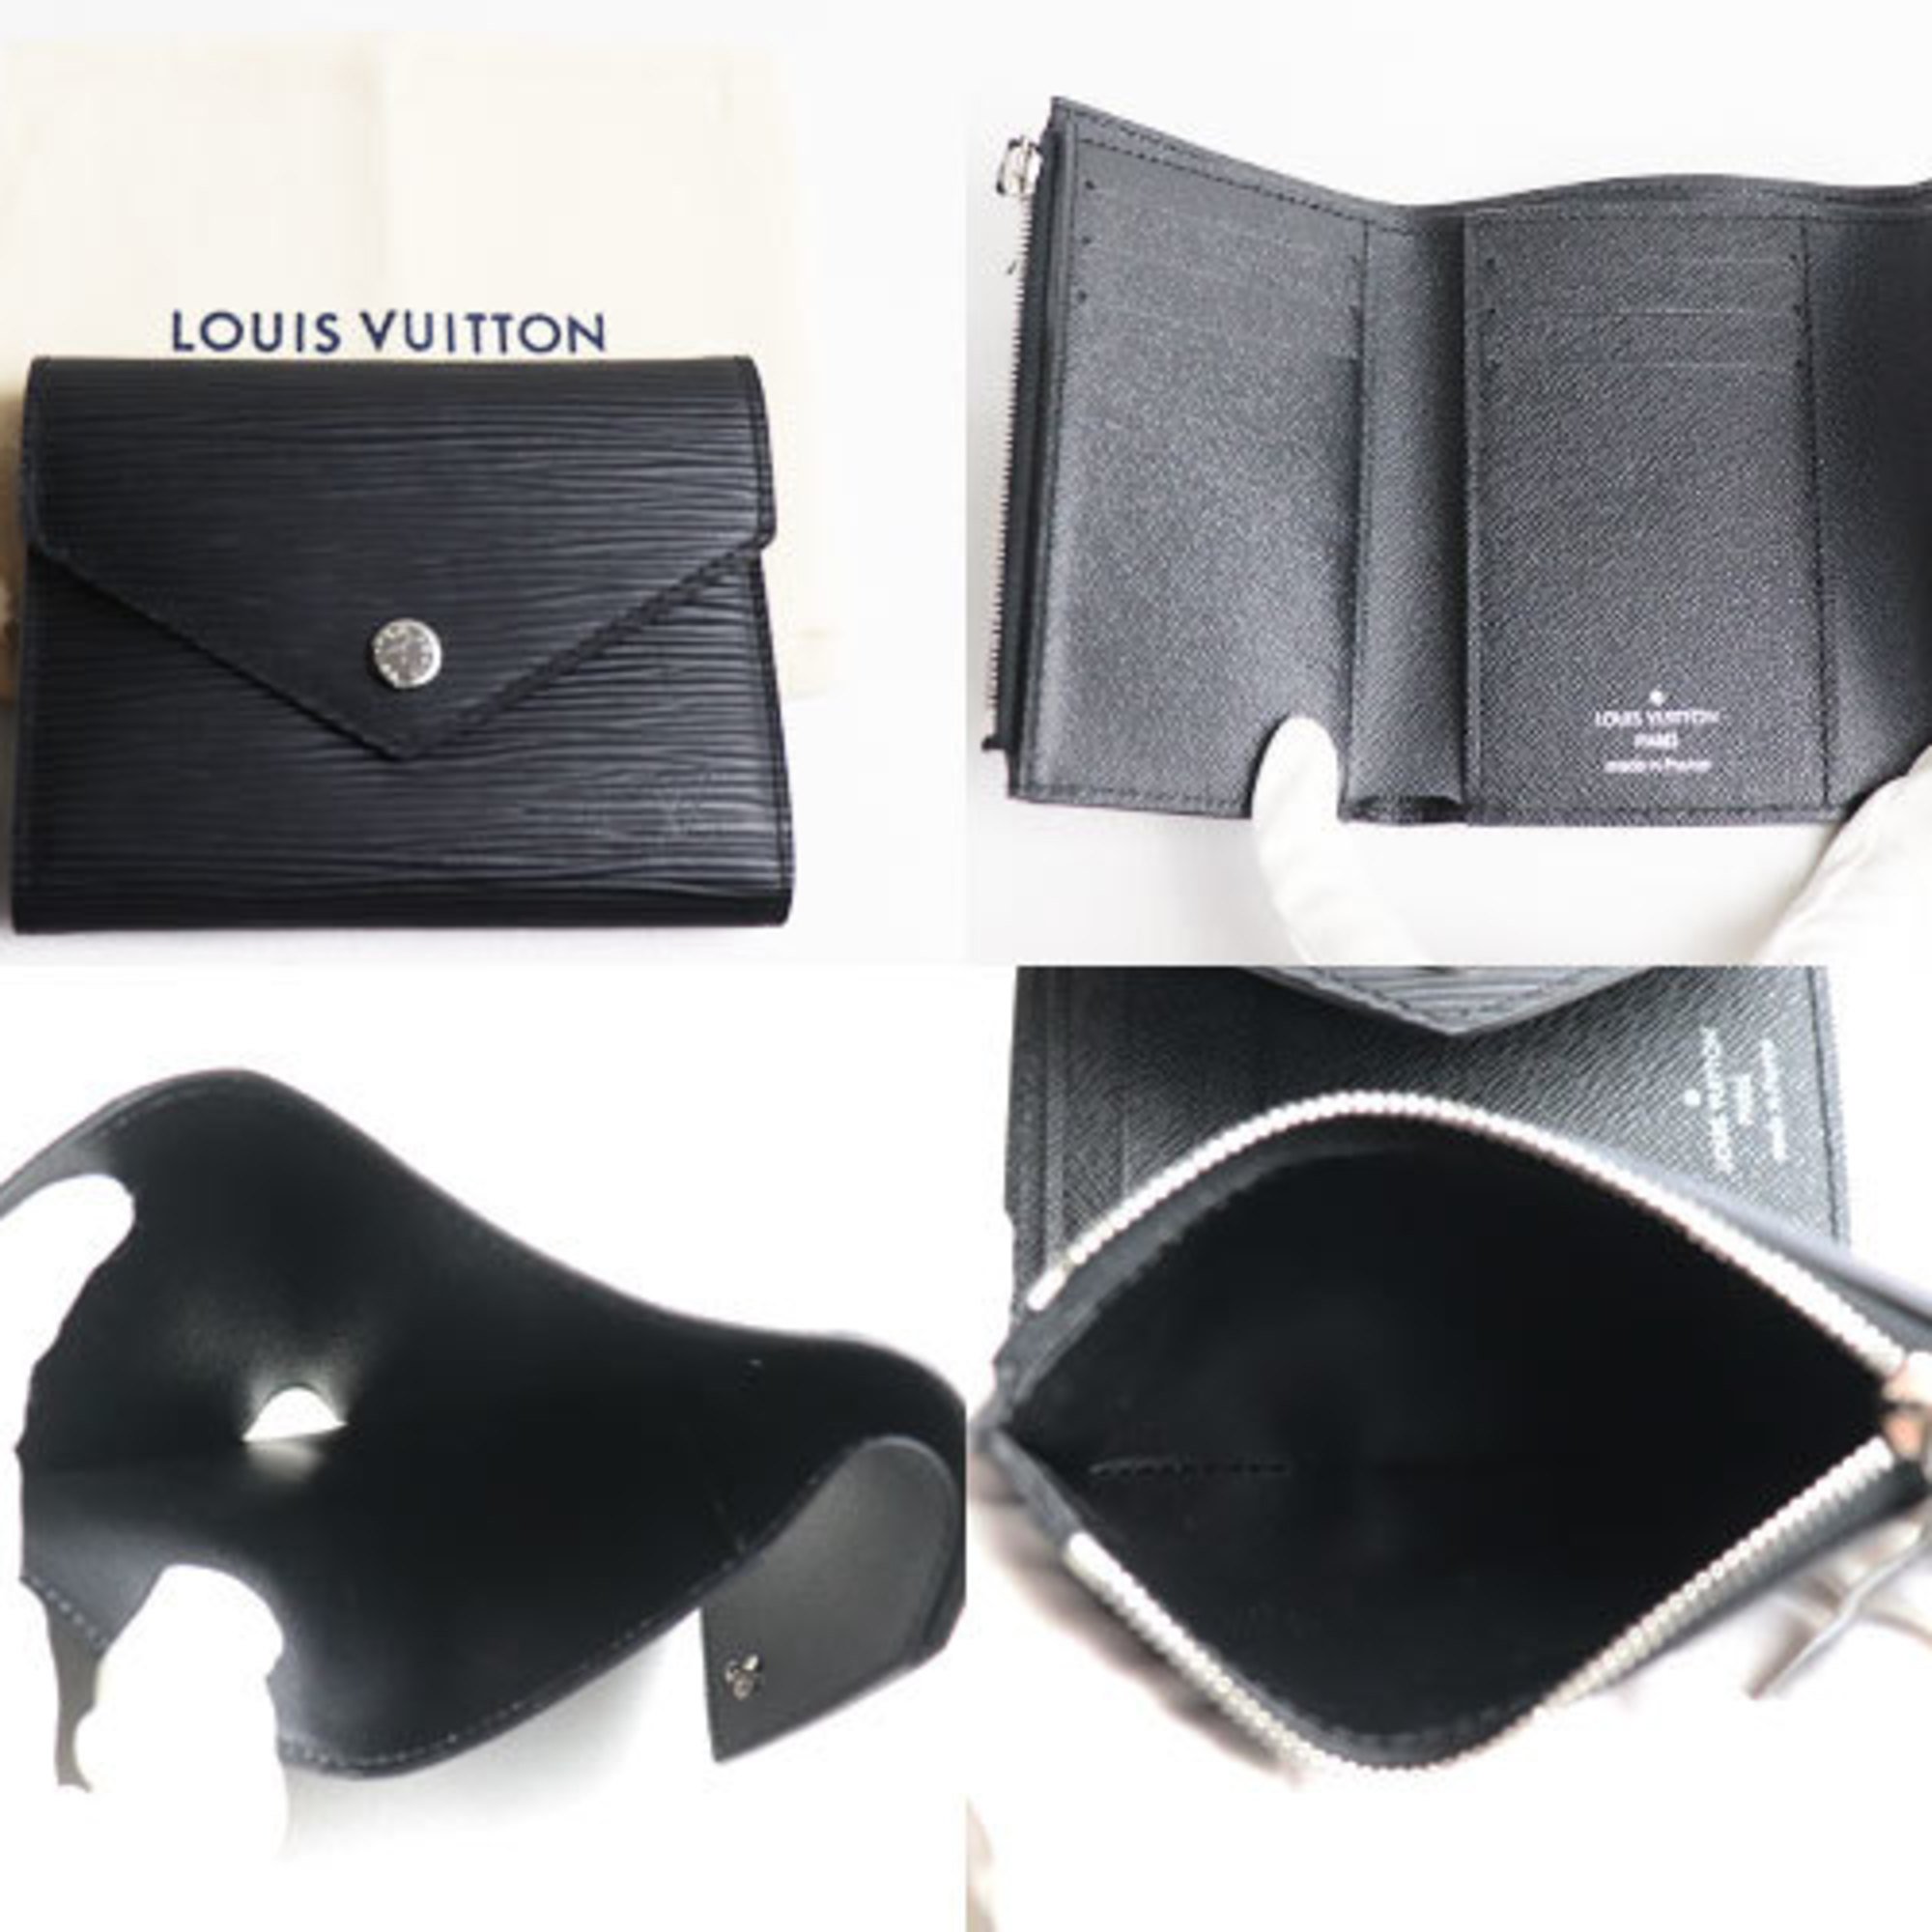 LOUIS VUITTON Portefeuil Victorine Trifold Wallet Epi Black M62173 SP3179